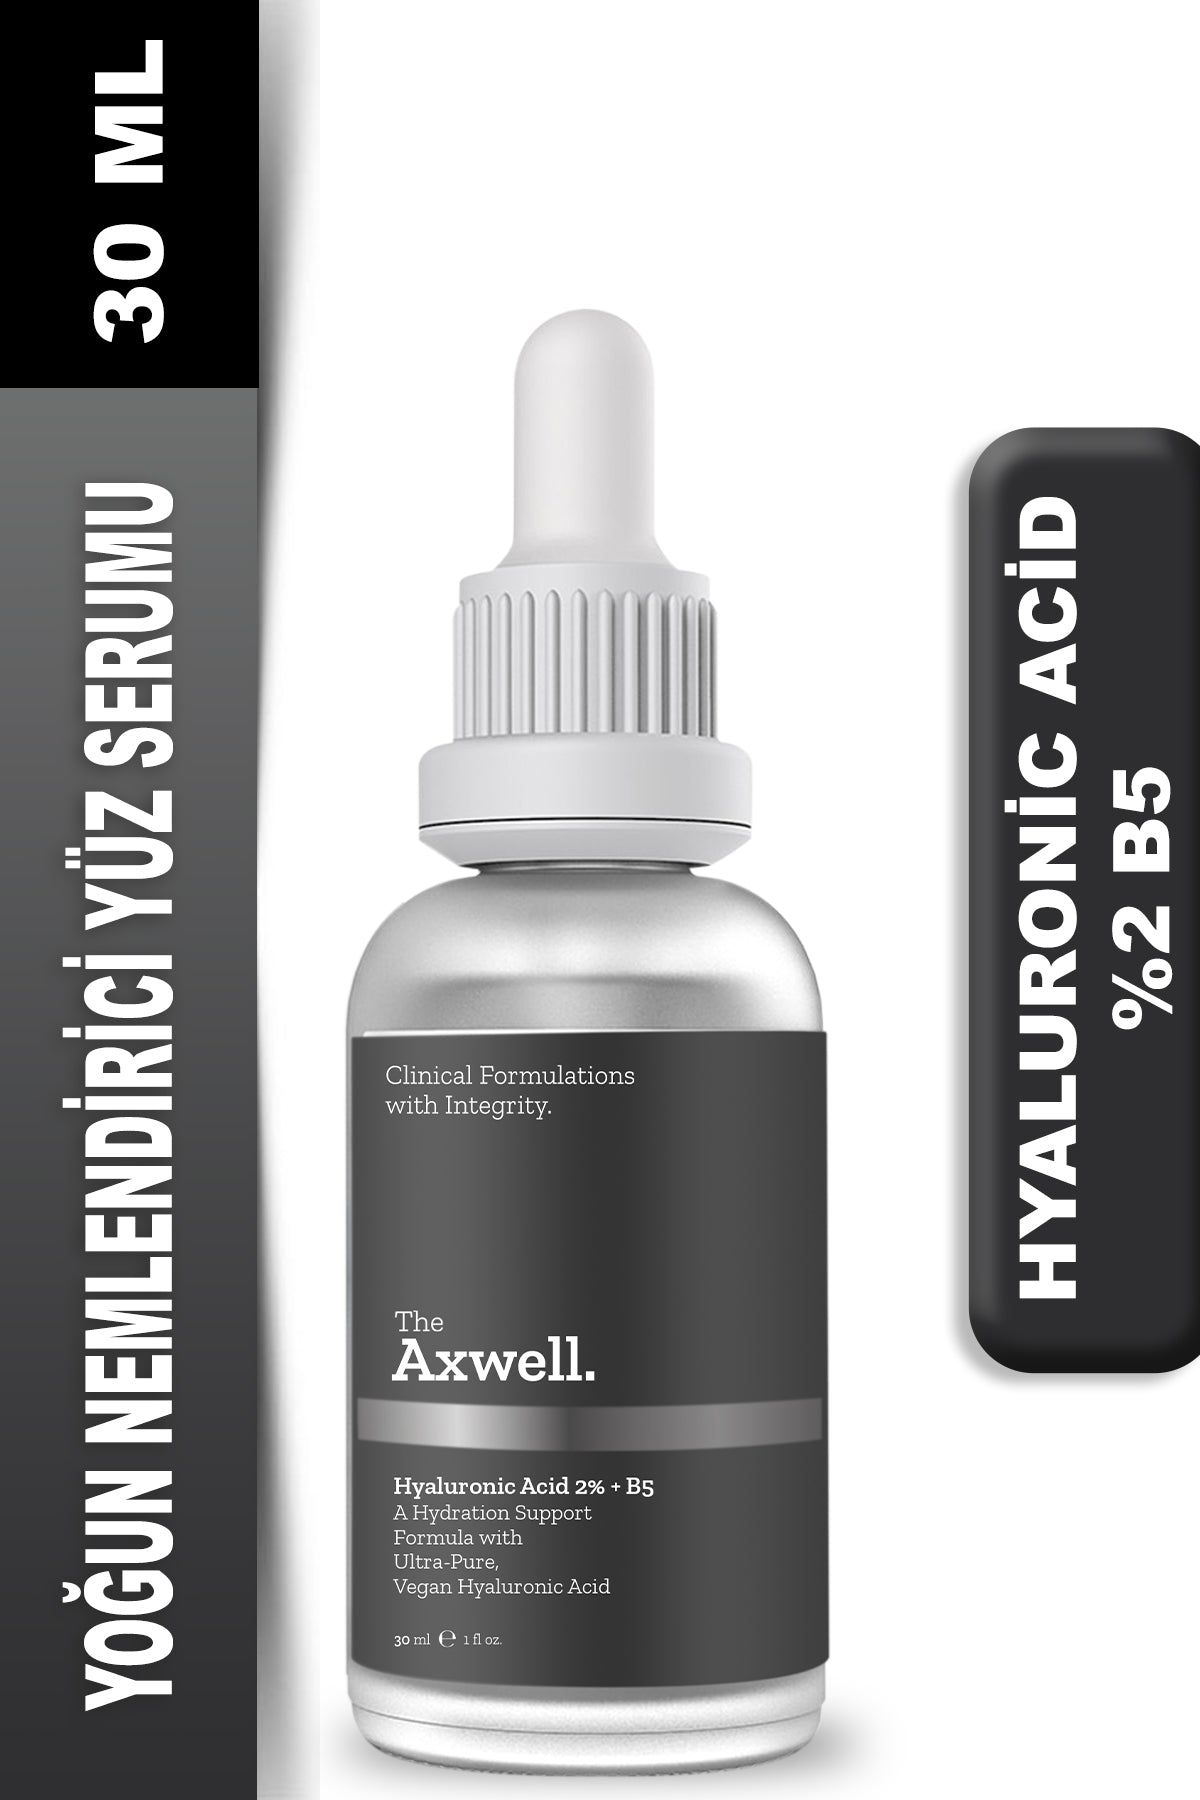 Axwell Hyaluronic Acid 2% + B5 30ml Nemlendirici Yüz Bakım Serumu